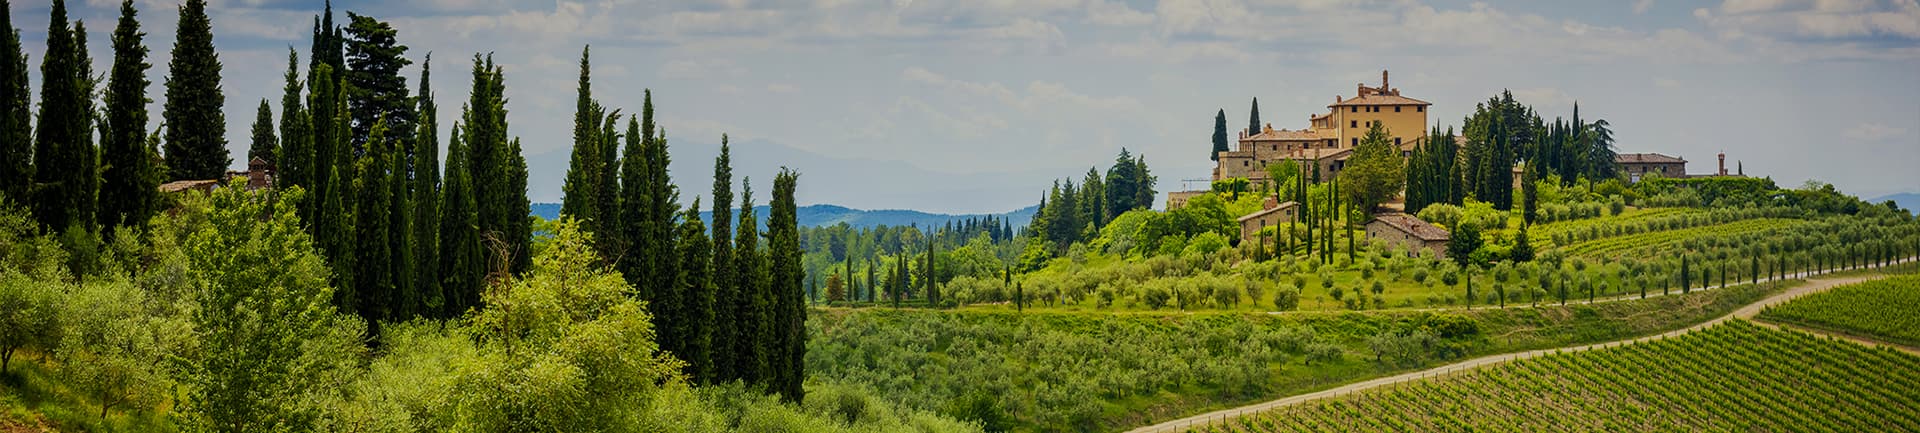 Toscana, tra bellezza e storia antica